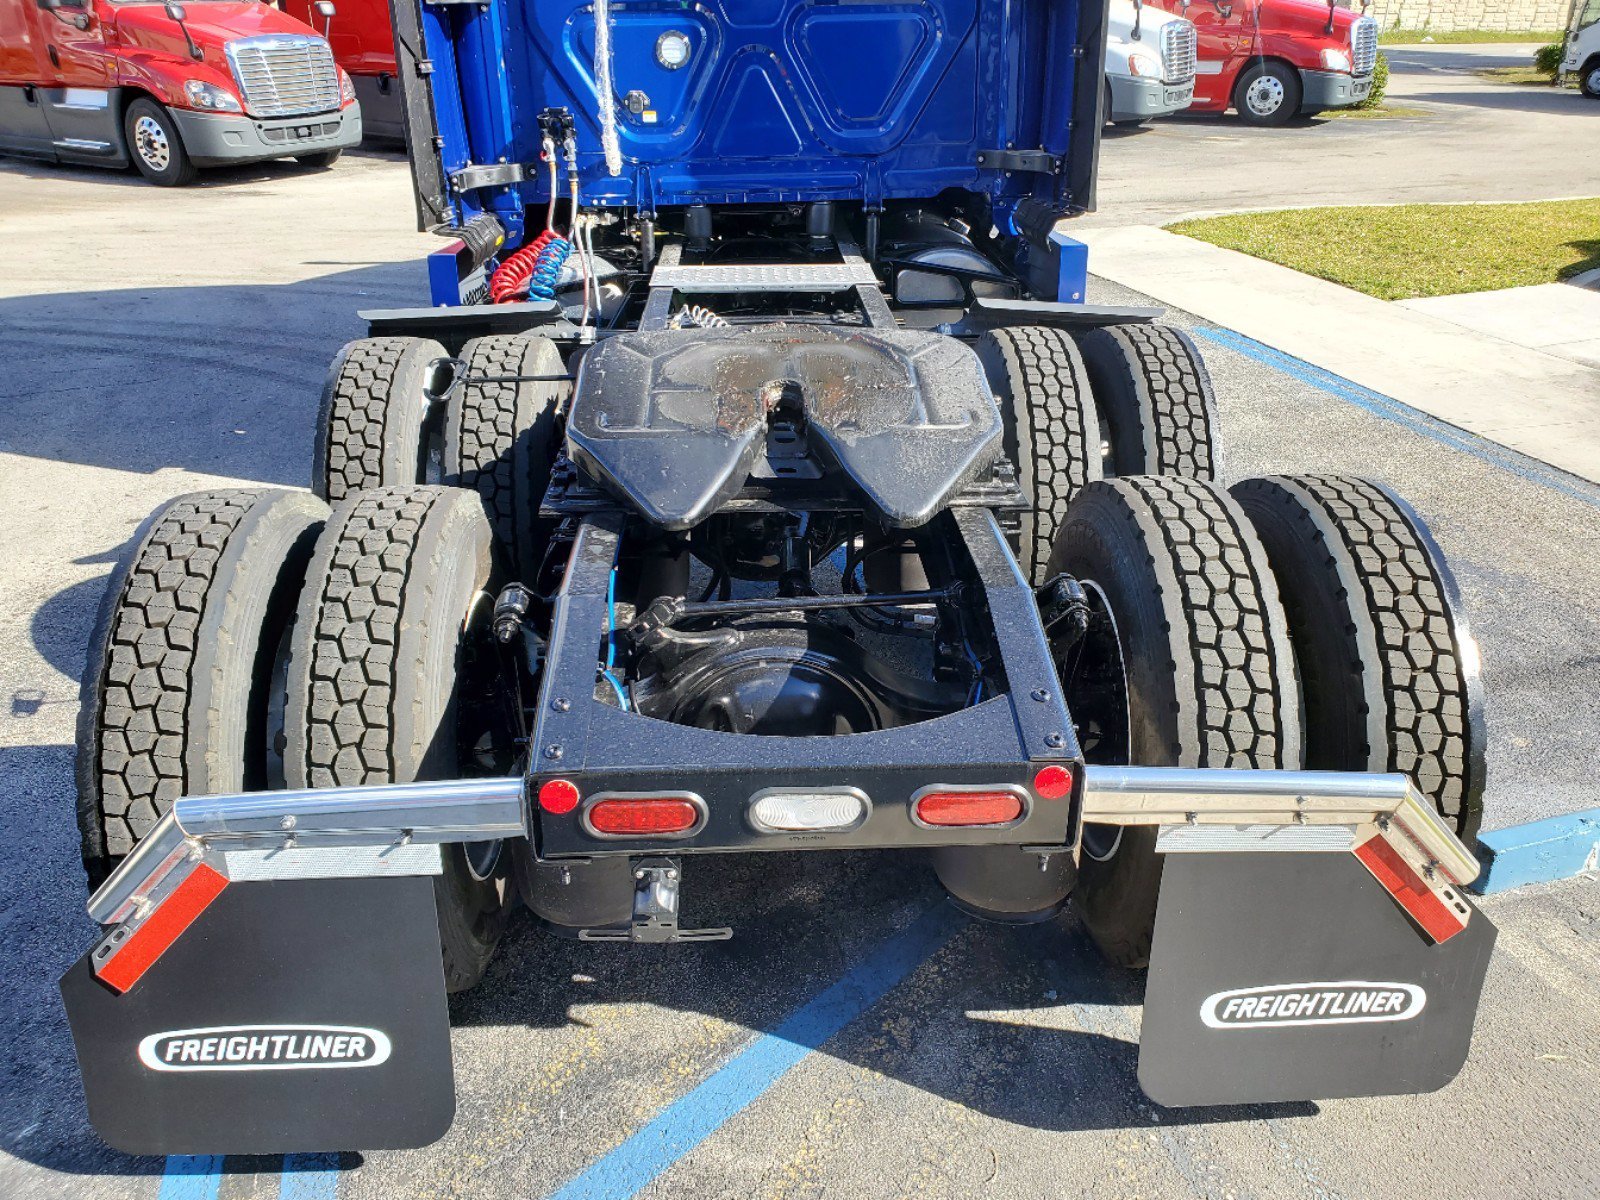 Camiones En Venta 2021 FREIGHTLINER CASCADIA Conventional – Sleeper Truck, Tractor, Miami, Florida